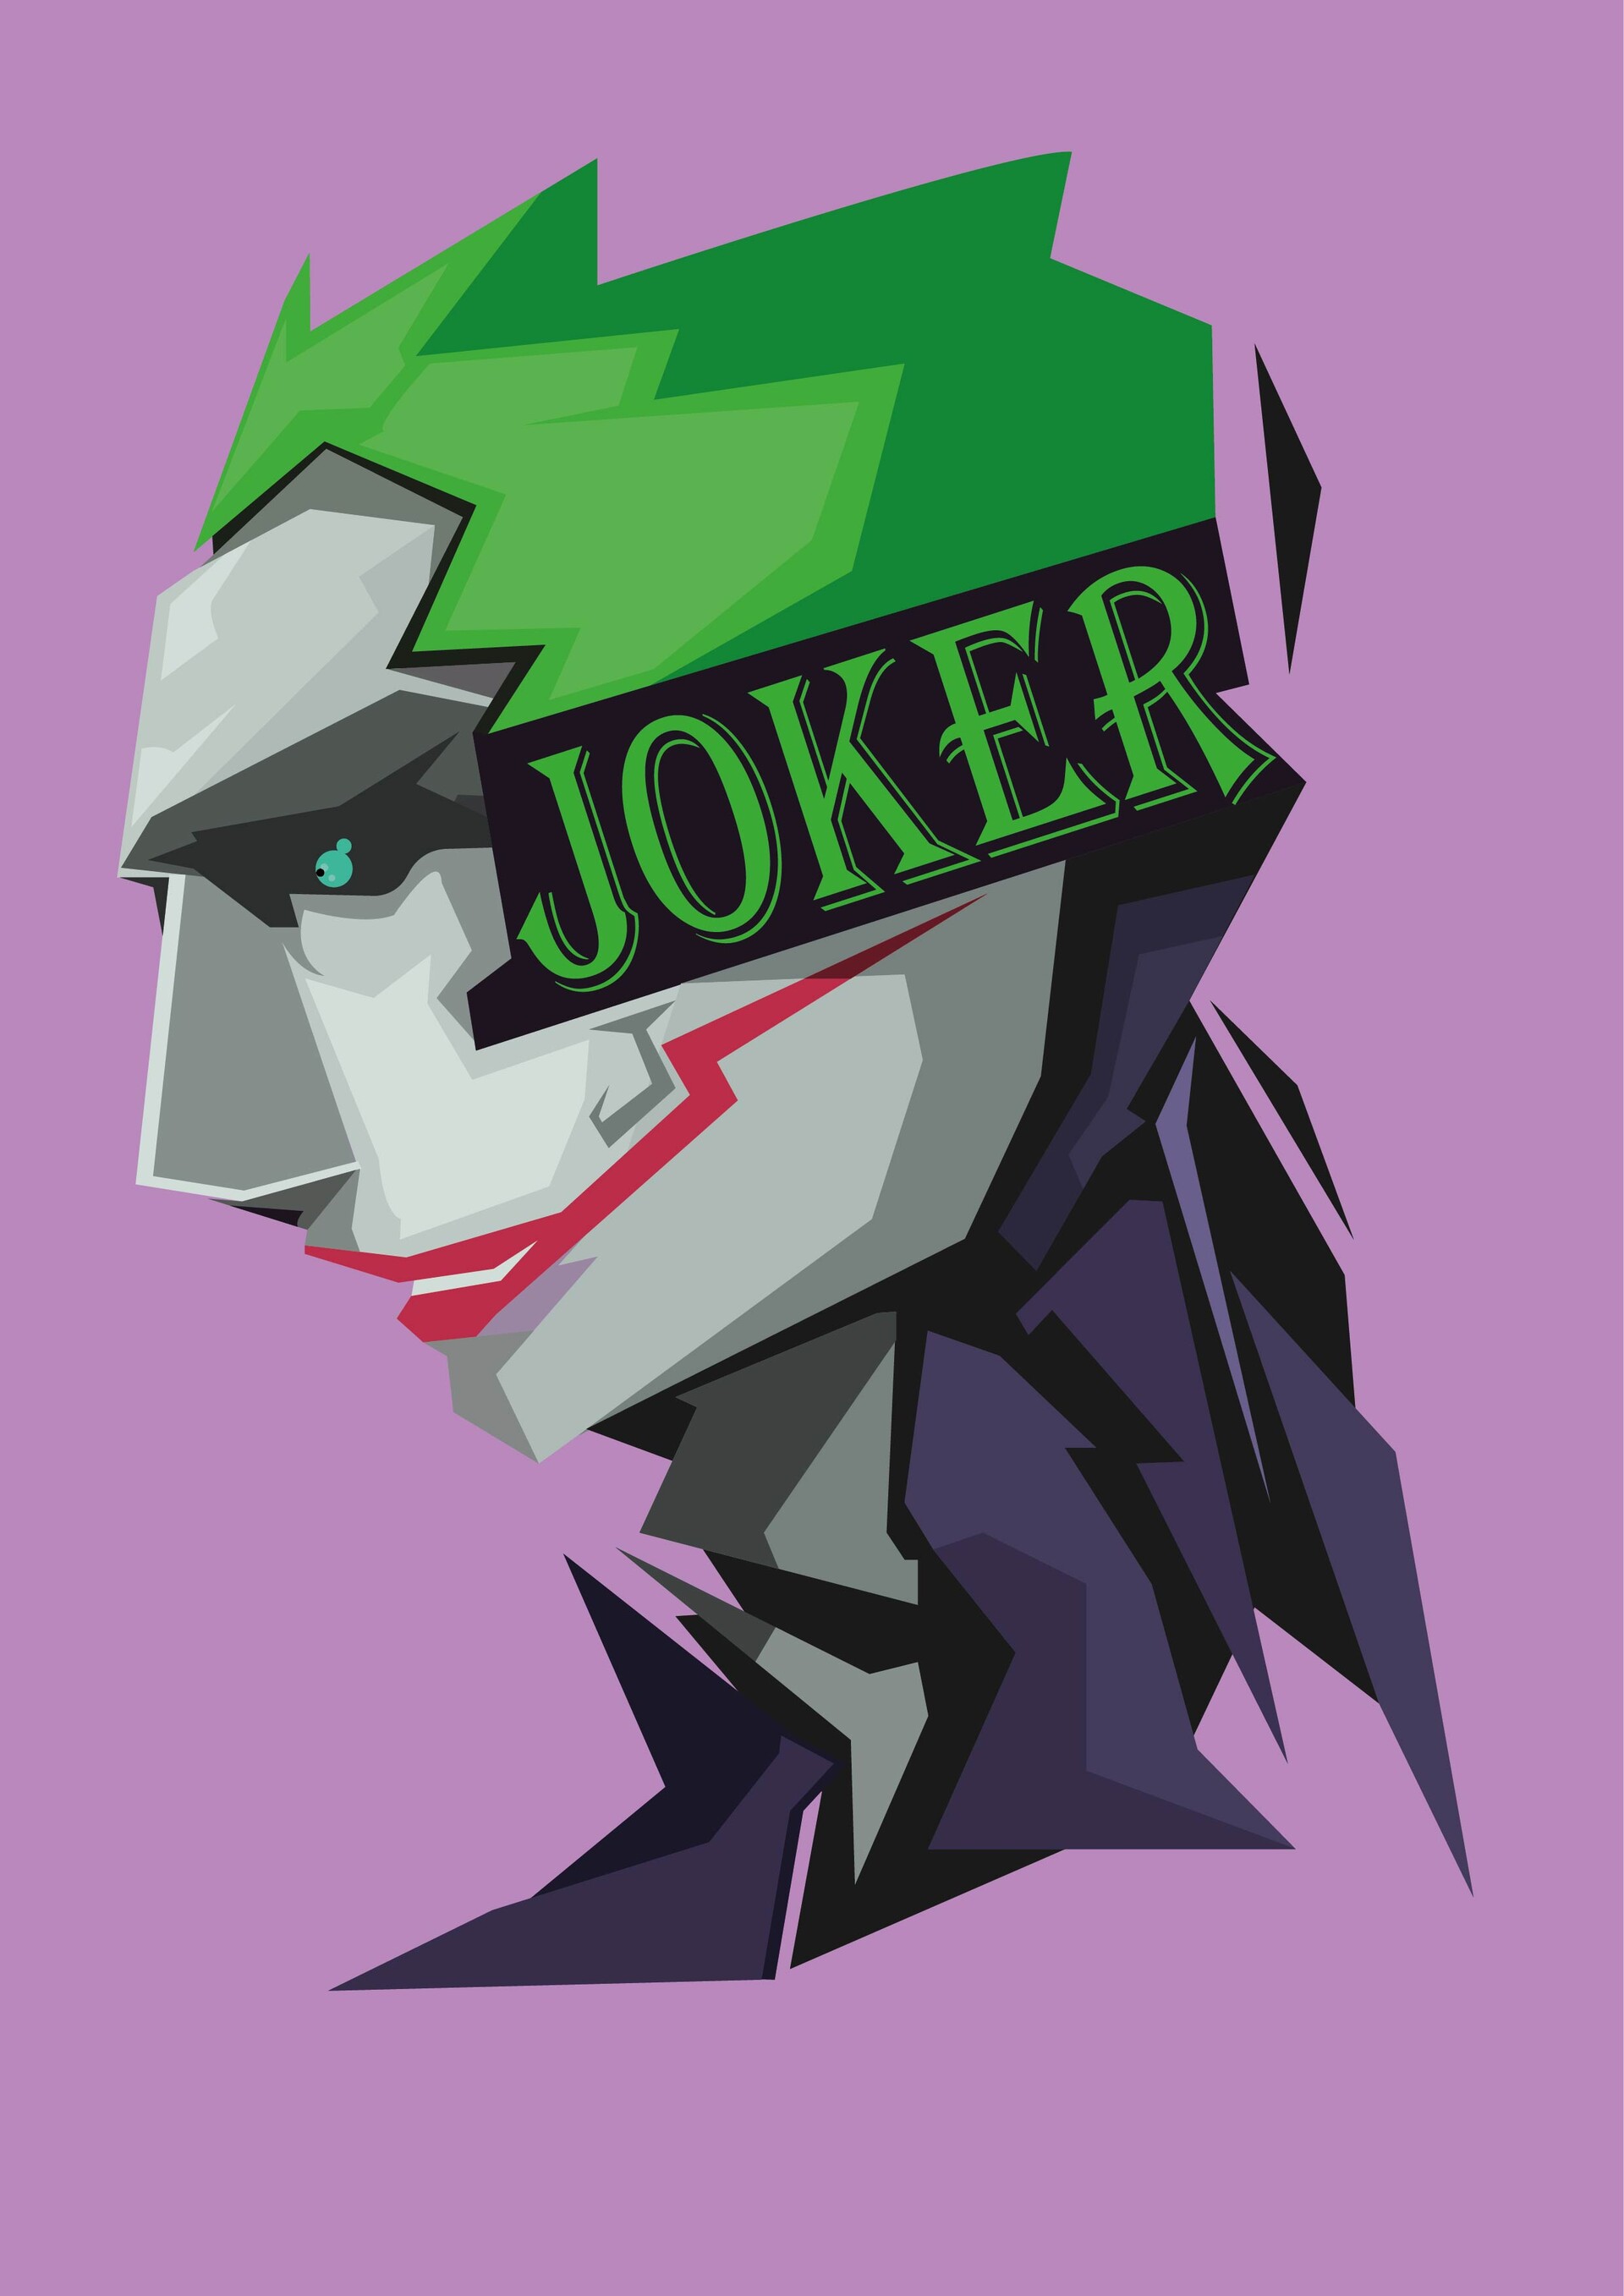 ArtStation - Joker Illustration